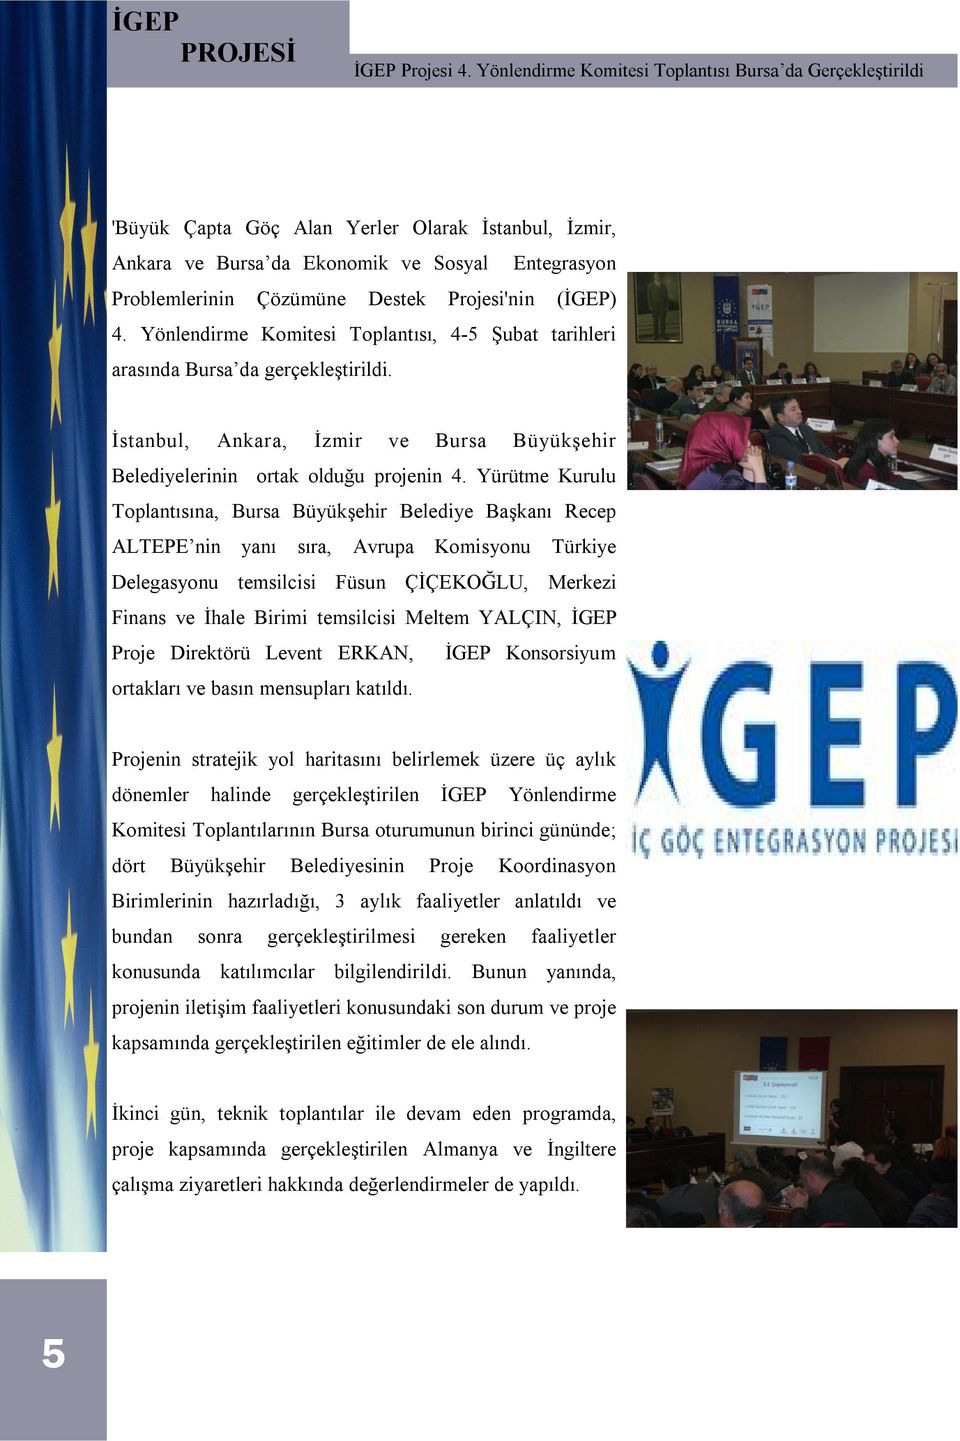 Projesi'nin (İGEP) 4. Yönlendirme Komitesi Toplantısı, 4-5 Şubat tarihleri arasında Bursa da gerçekleştirildi. İstanbul, Ankara, İzmir ve Bursa Büyükşehir Belediyelerinin ortak olduğu projenin 4.